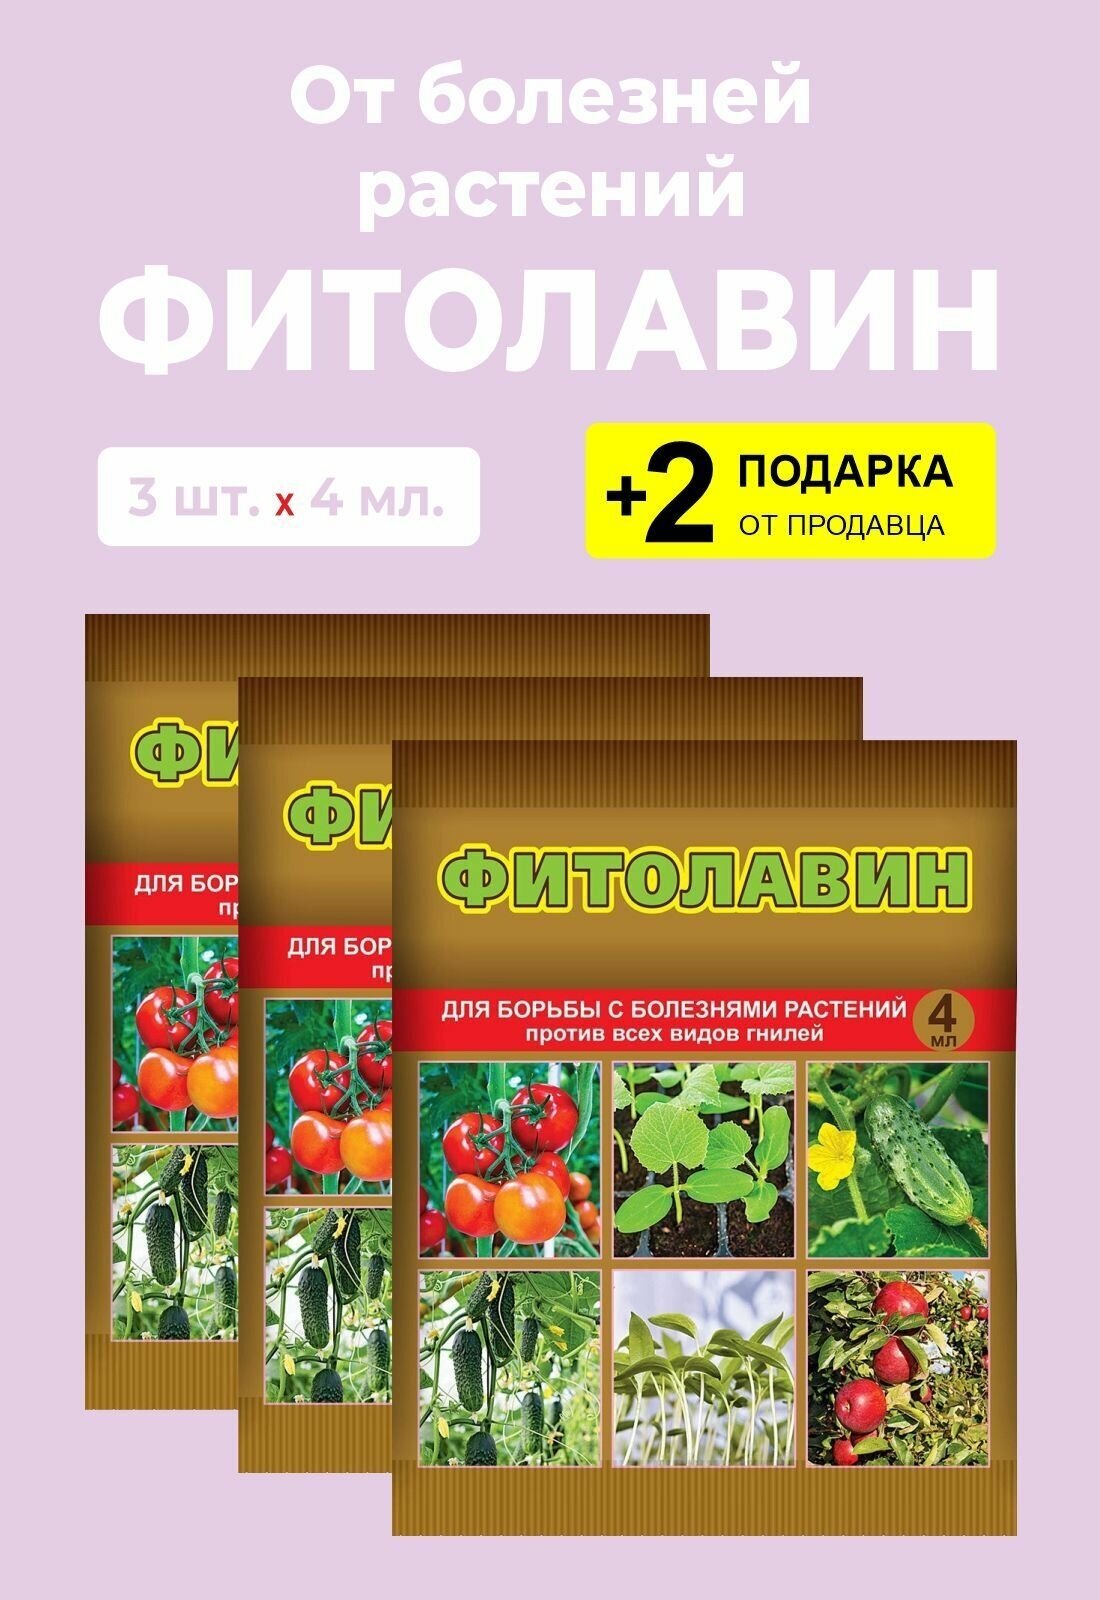 Биопрепарат "Фитолавин" для защиты растений, 4 мл., 3 упаковки + 2 Подарка